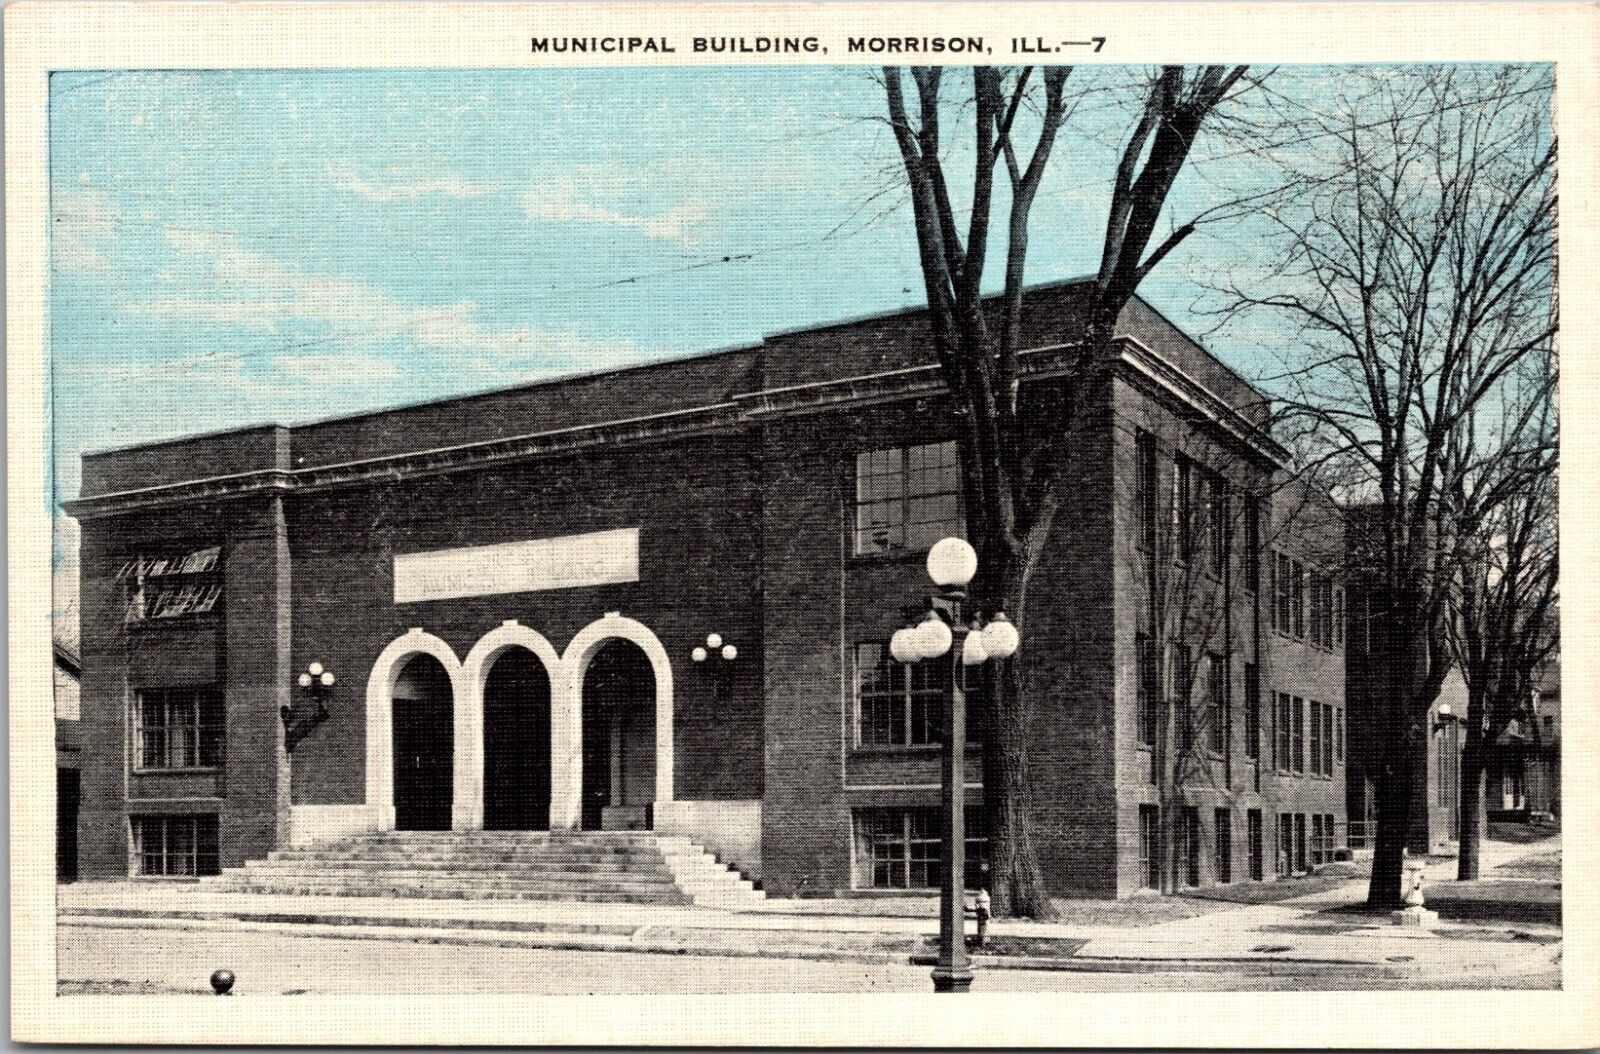 Morrison Illinois -Postcard - Municipal Building